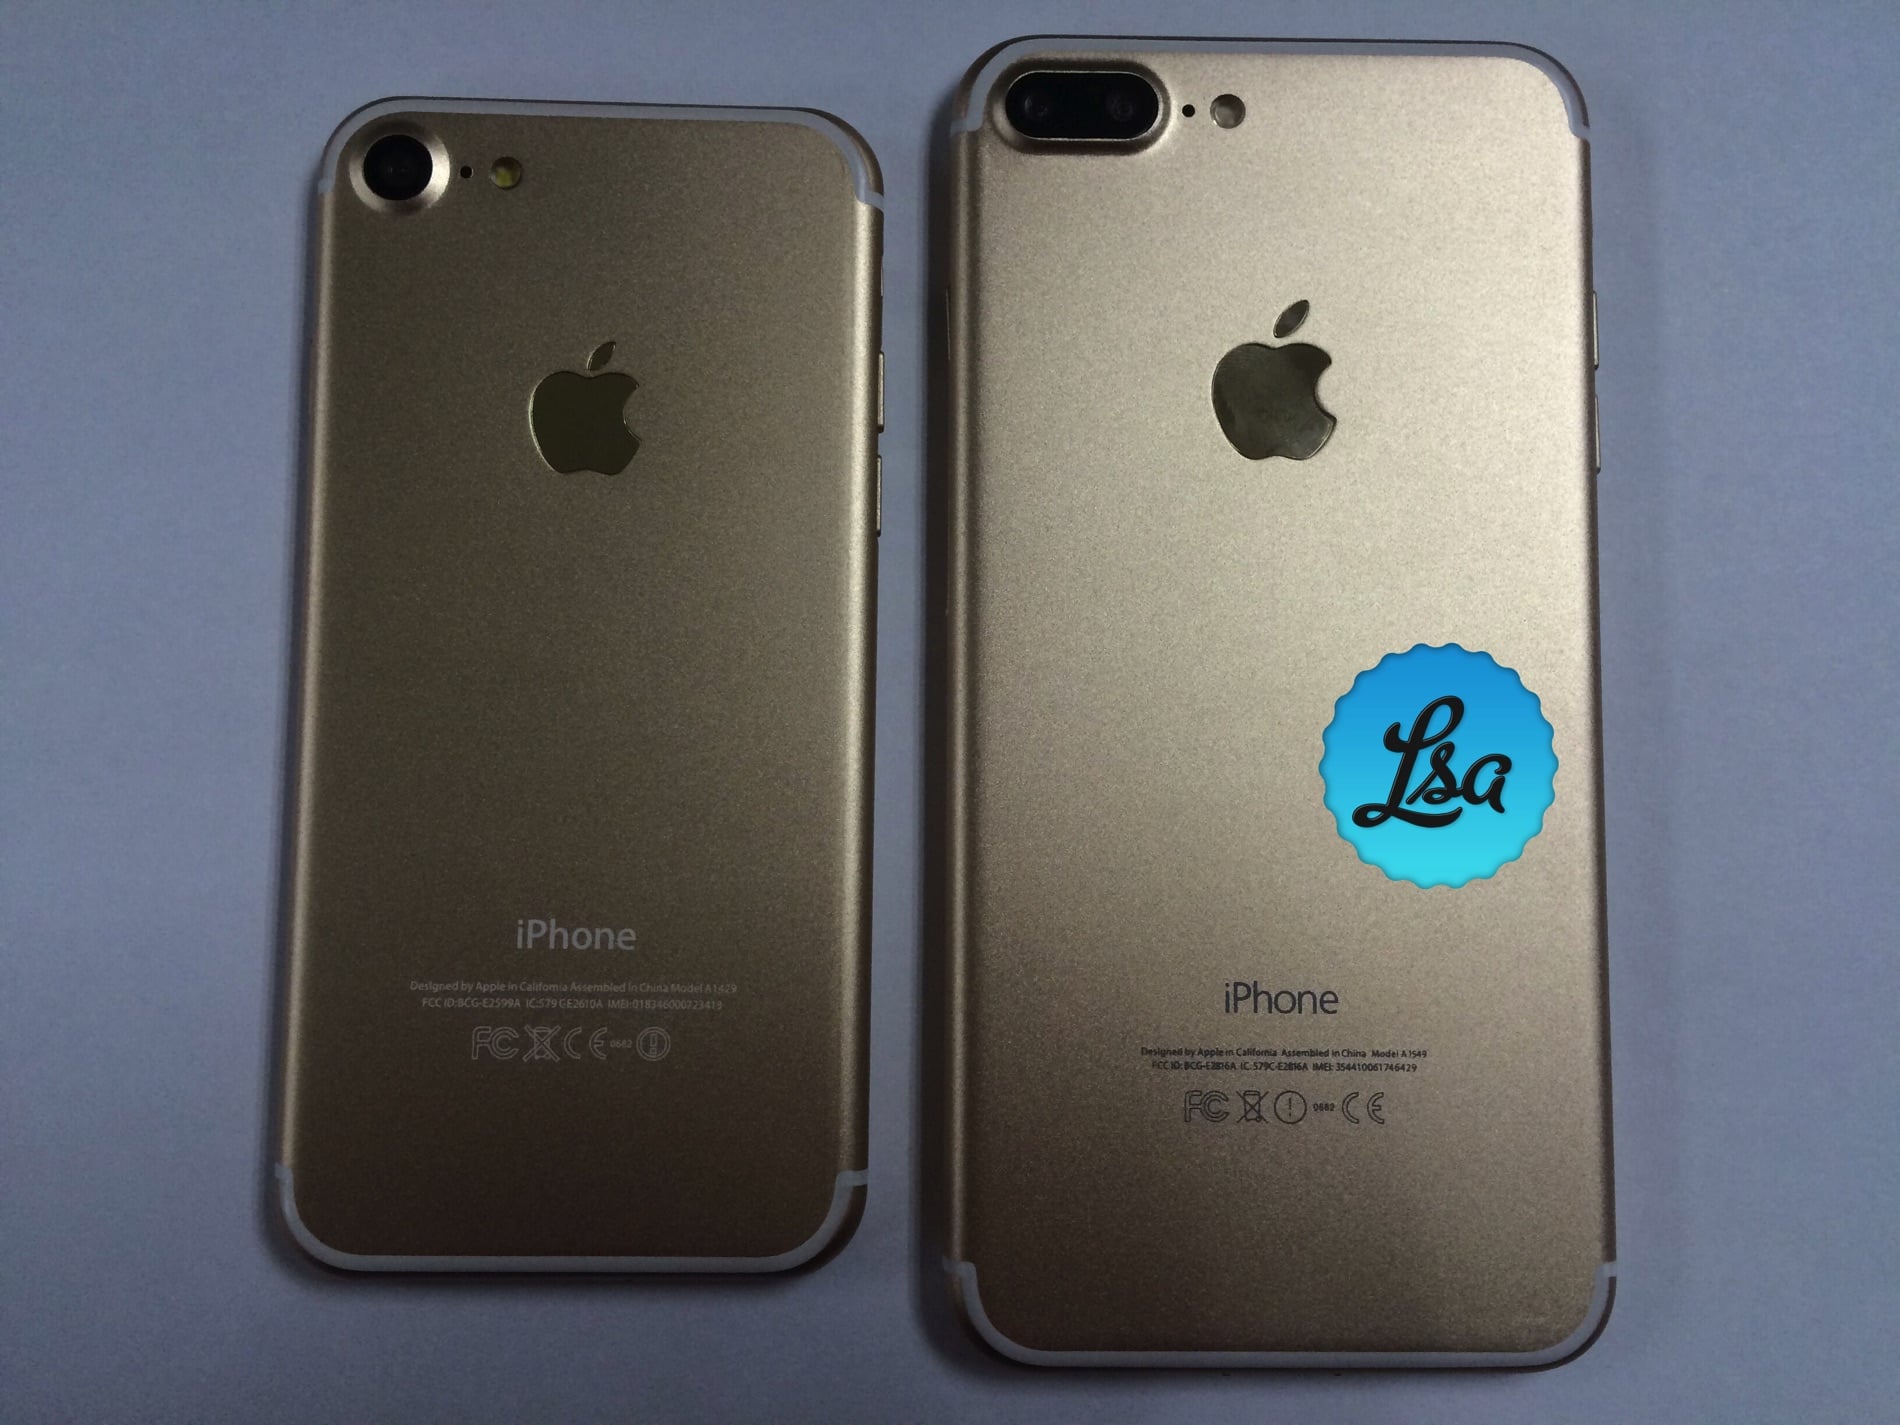 ゴールドカラーの Iphone 7 7plus のモックアップ写真がリーク Ipod Love